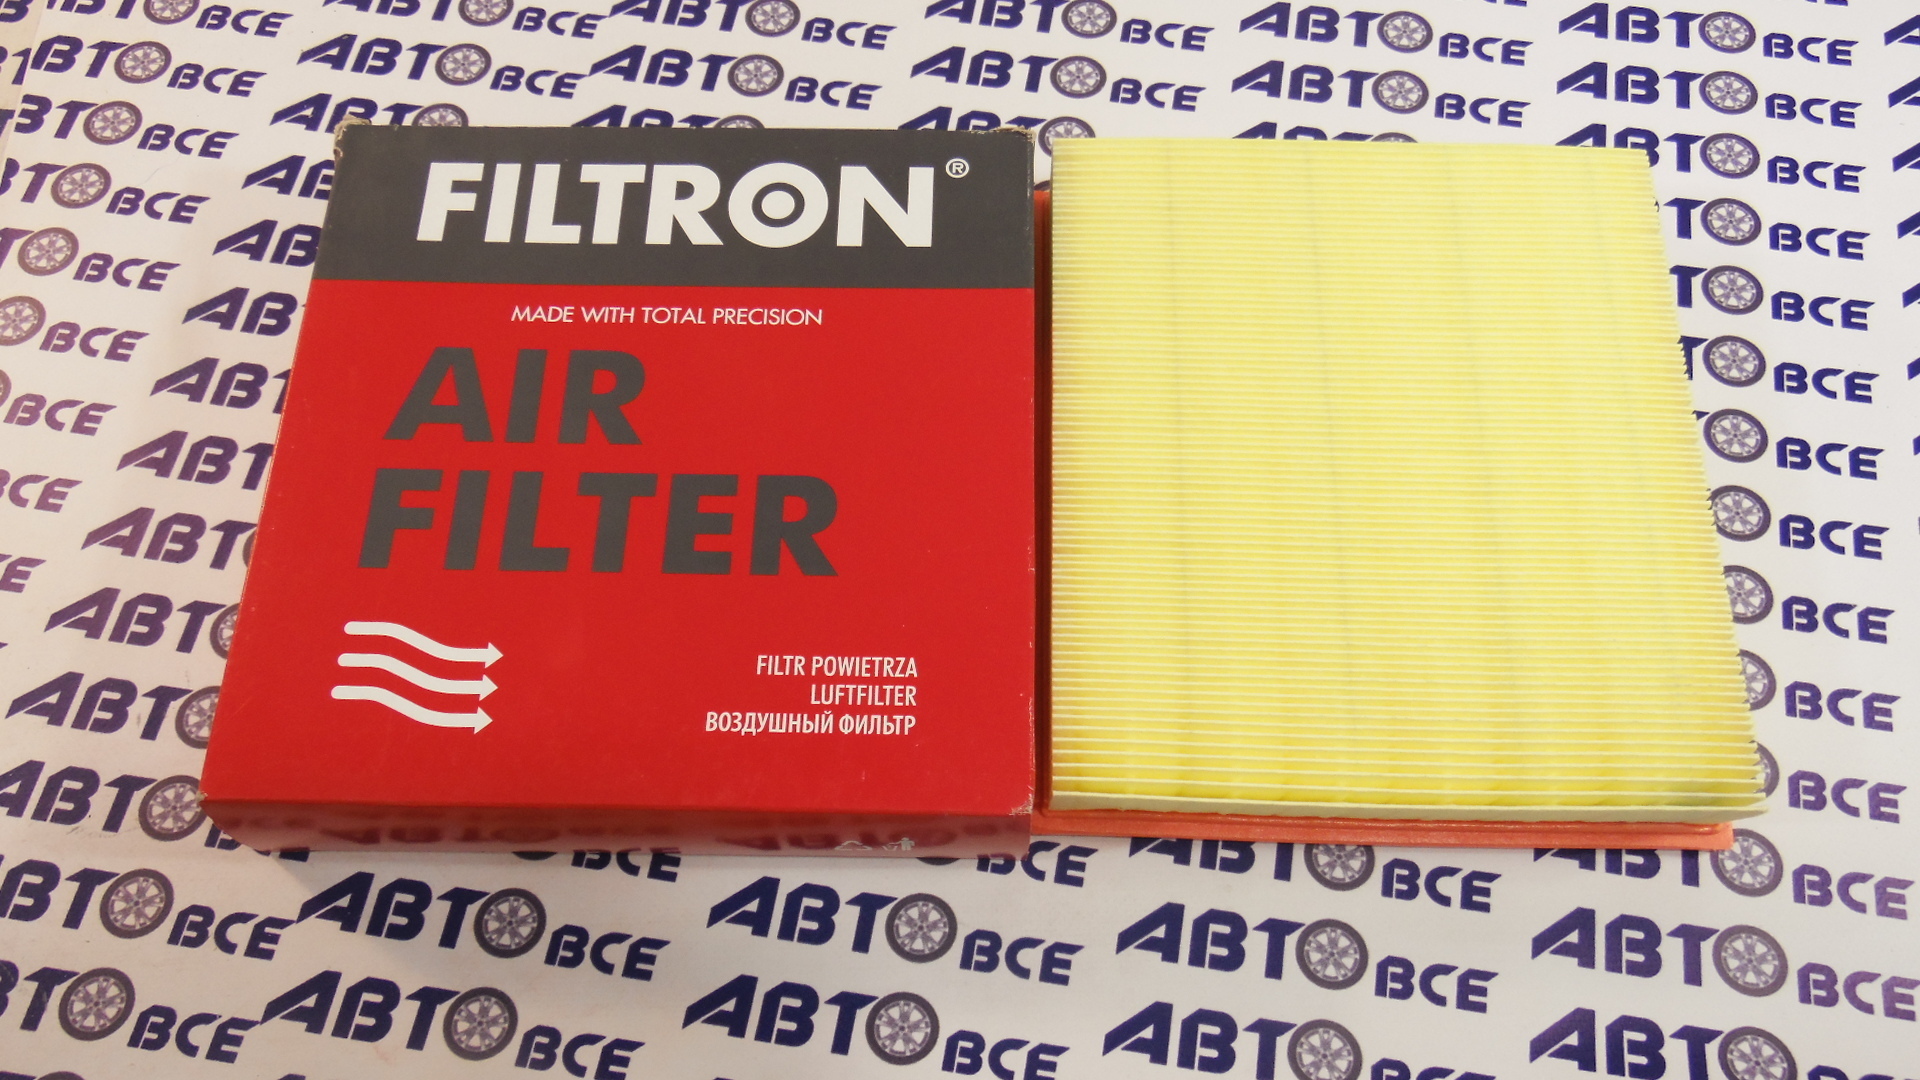 Фильтр воздушный AP1874 FILTRON